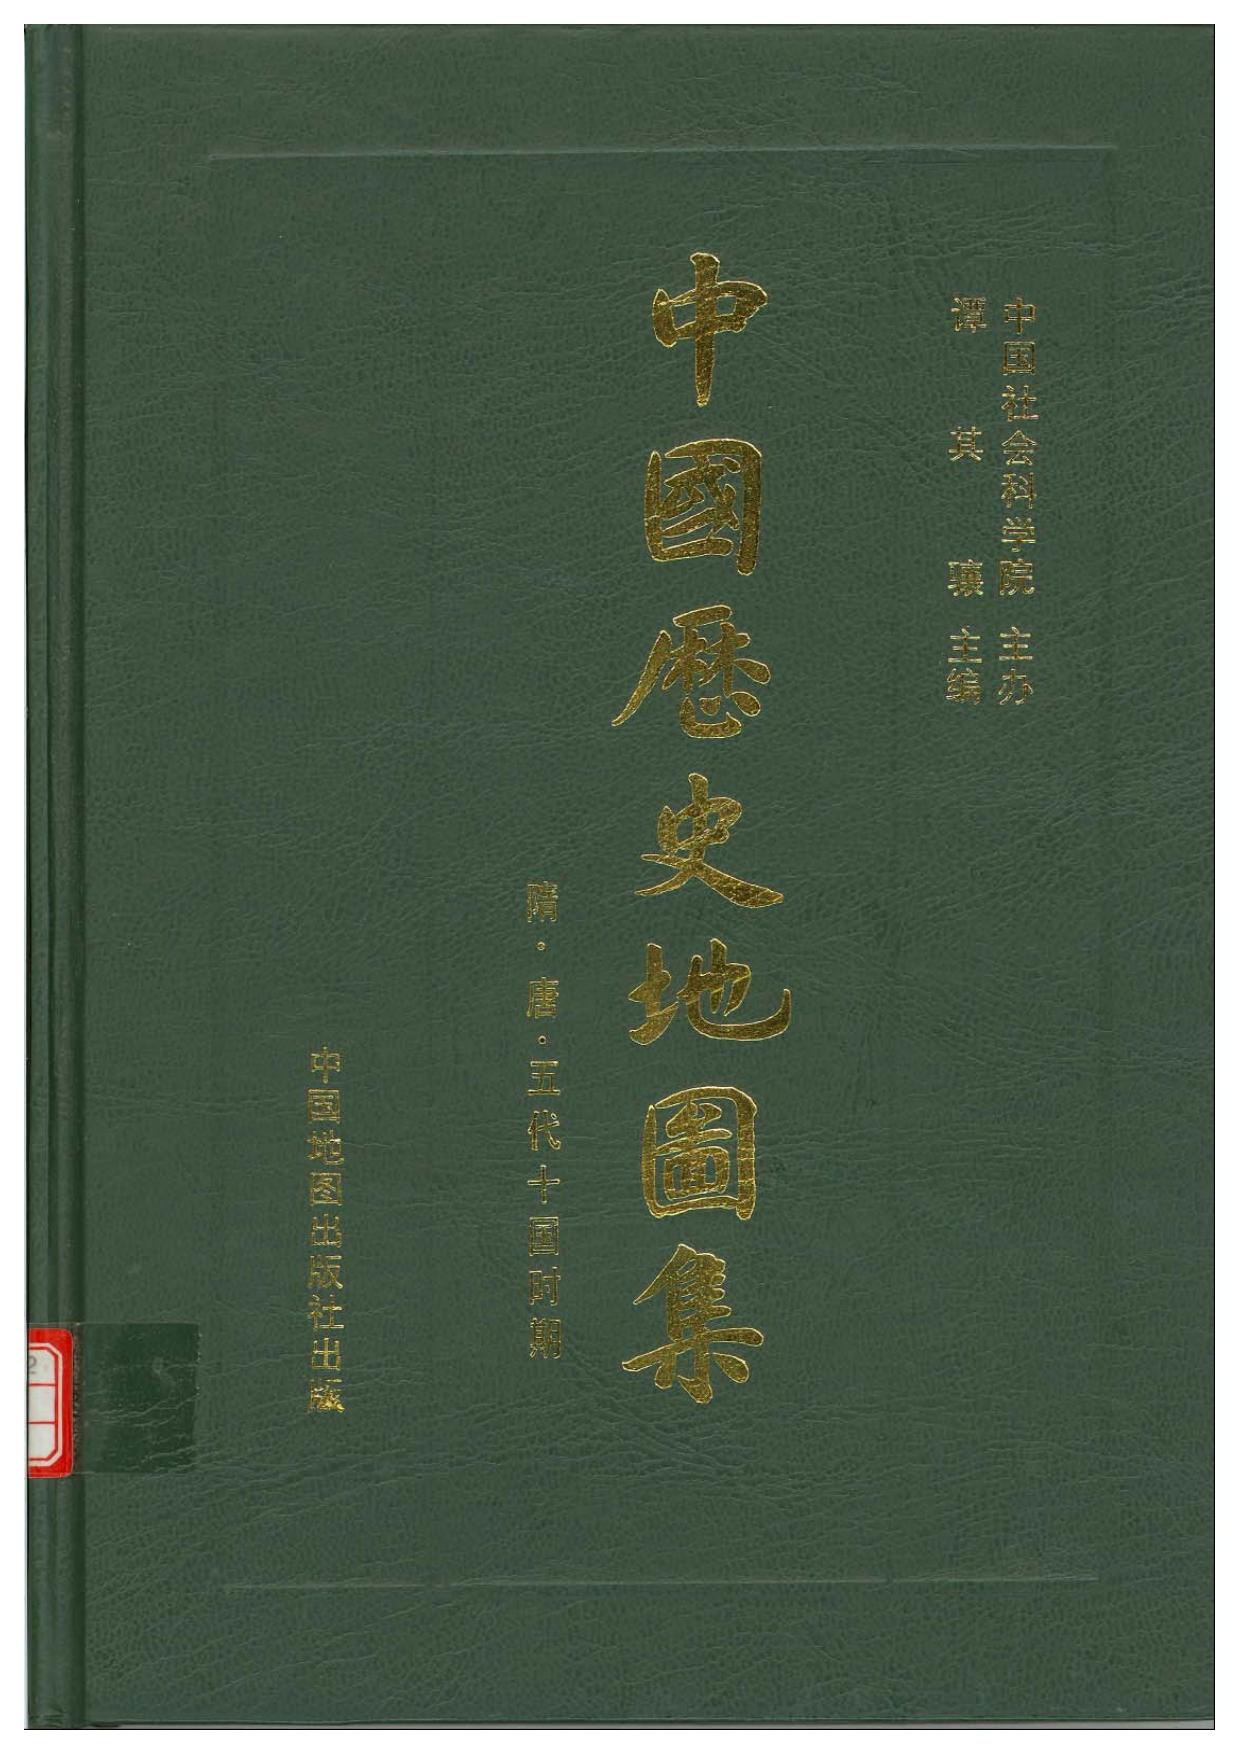 中国历史地图集 第五册 隋唐五代十国